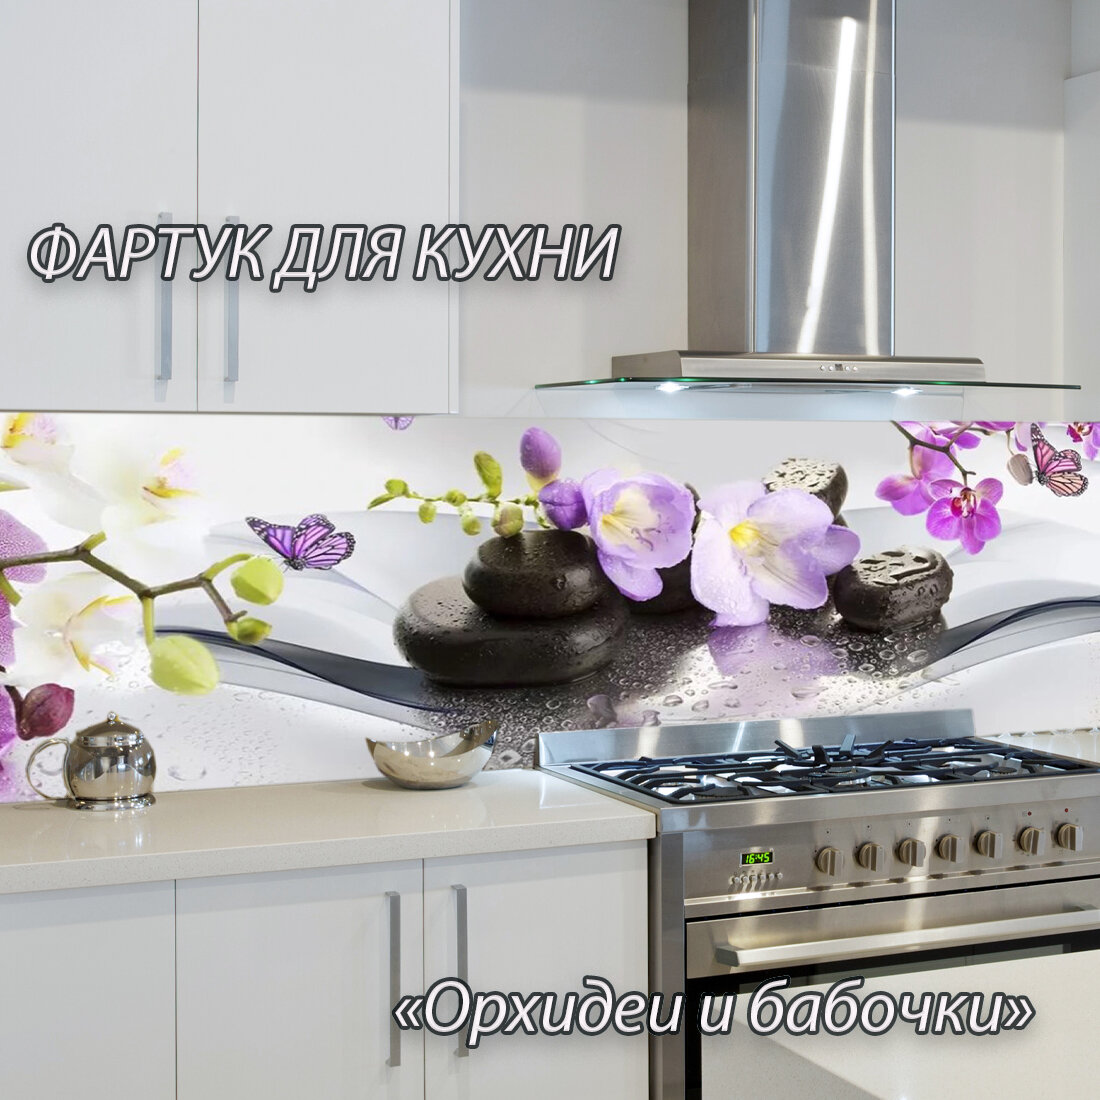 Фартук для кухни из АБС пластика "Орхидеи и бабочки" 4000*600*1,5мм. Кухонный фартук ABS с фотопечатью. - фотография № 1